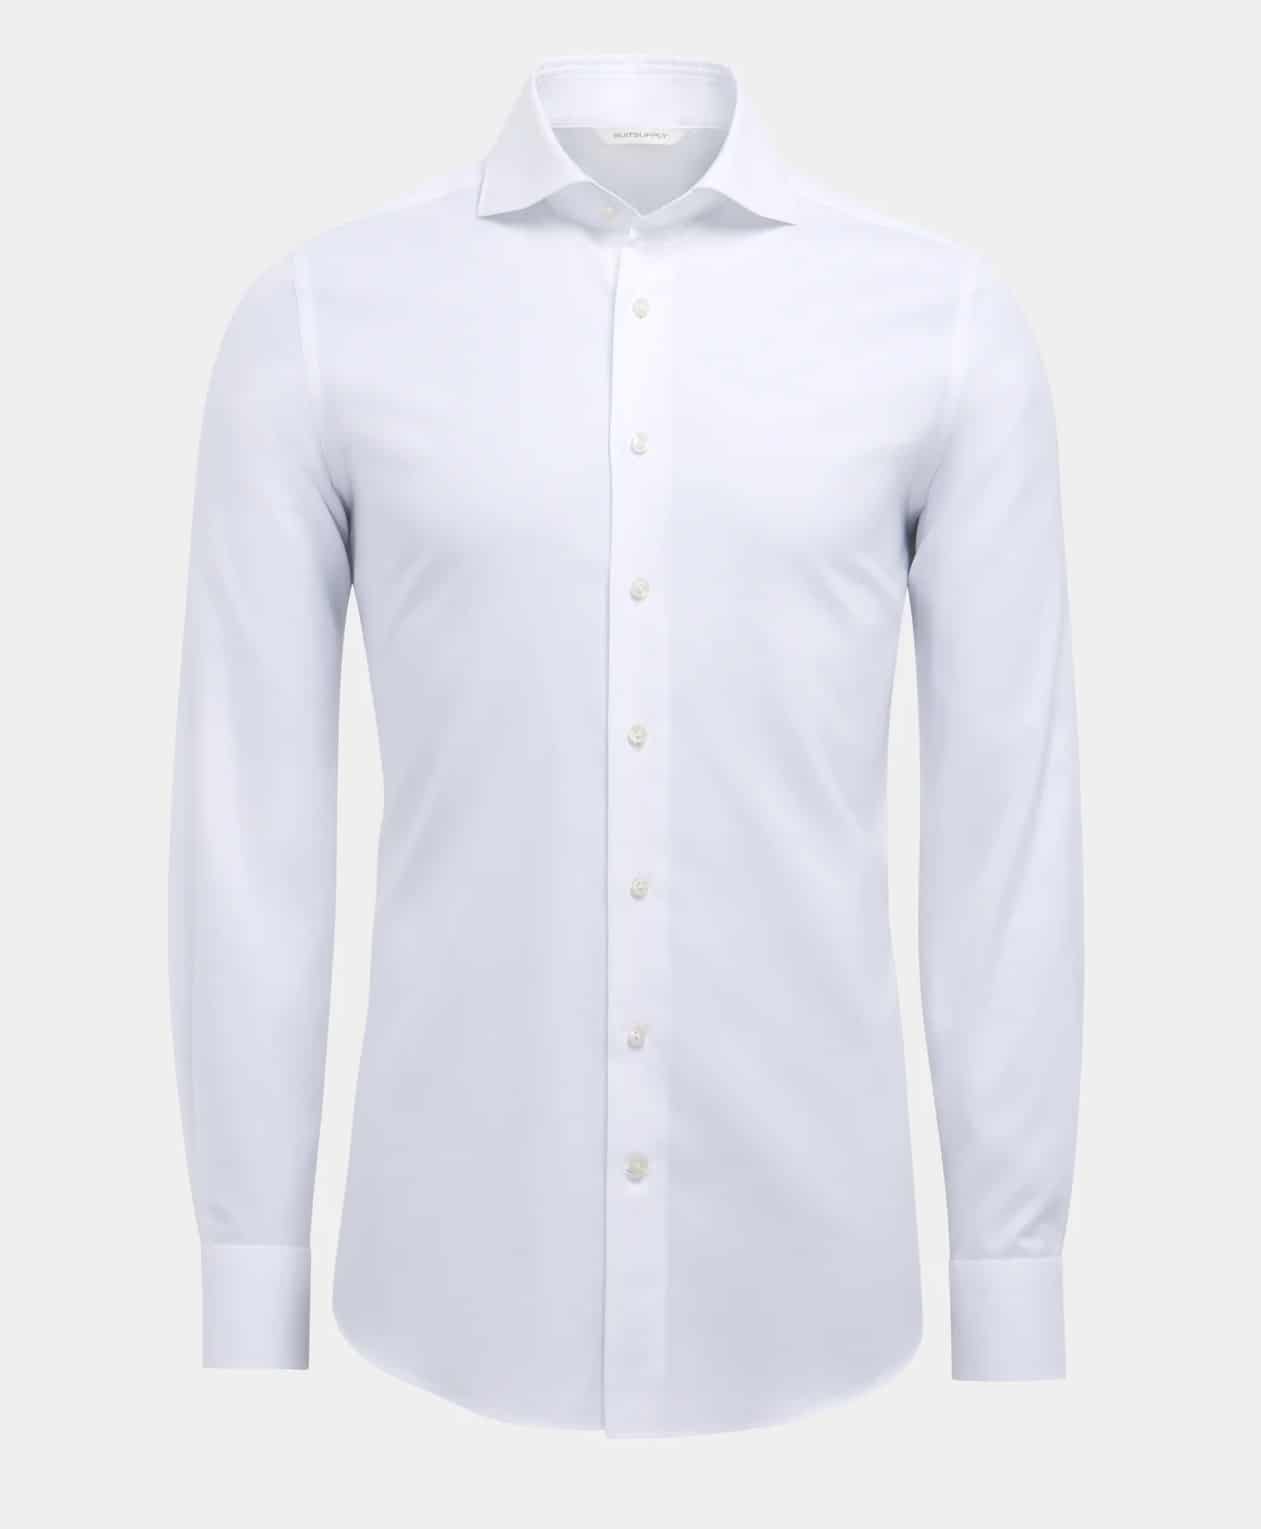 Marque de chemise - SuitSupply